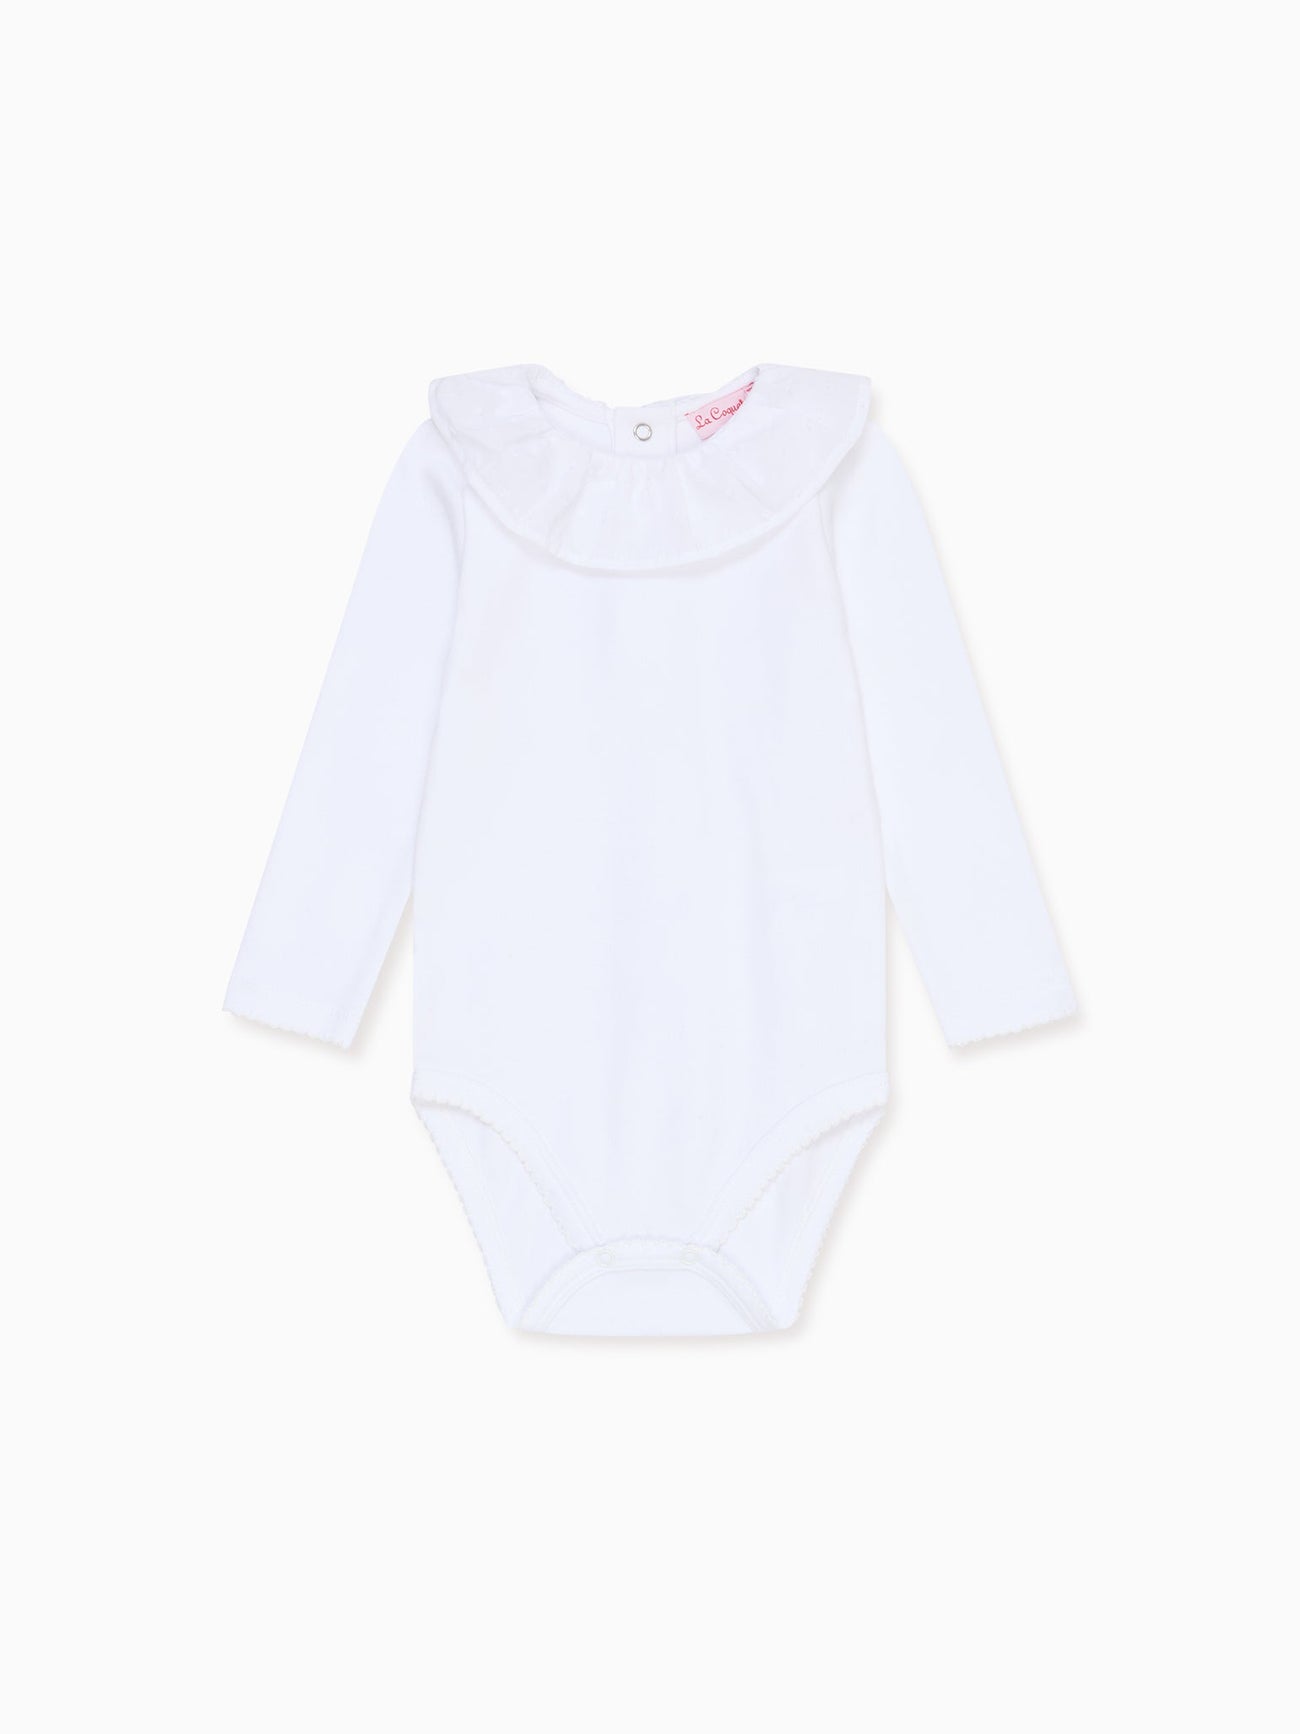 White Laya Baby Body Vest